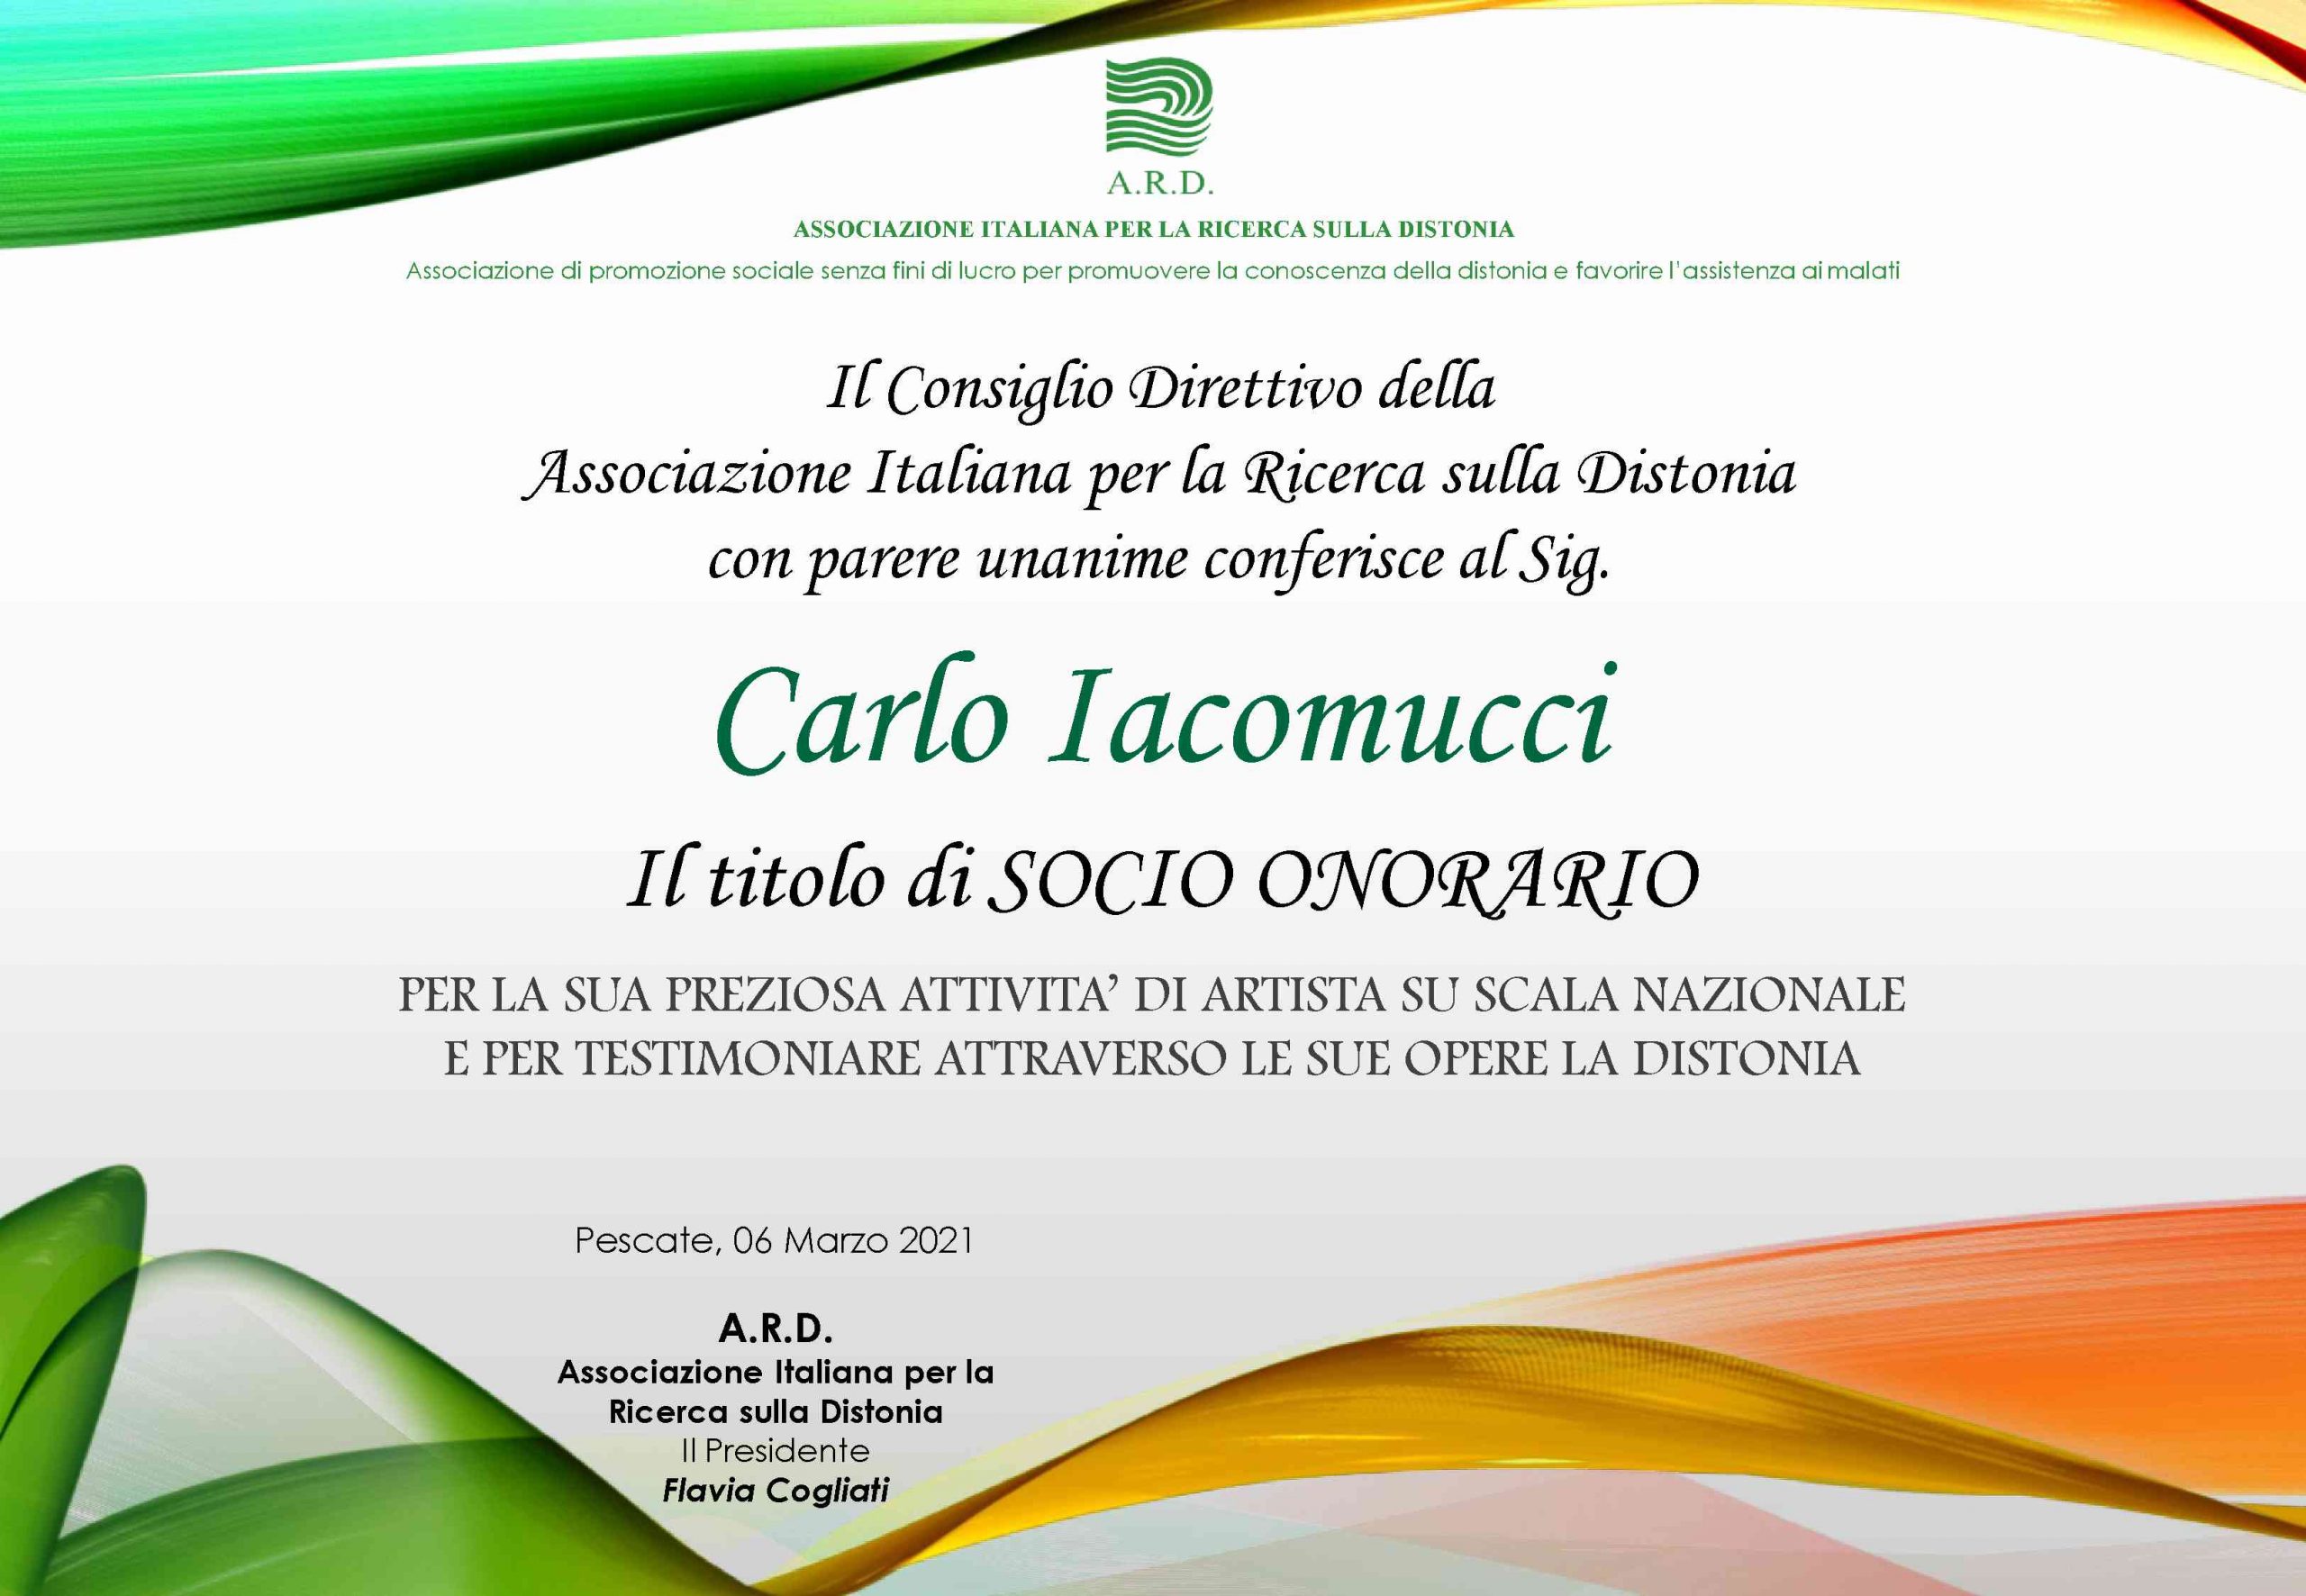 Carlo Iacomucci